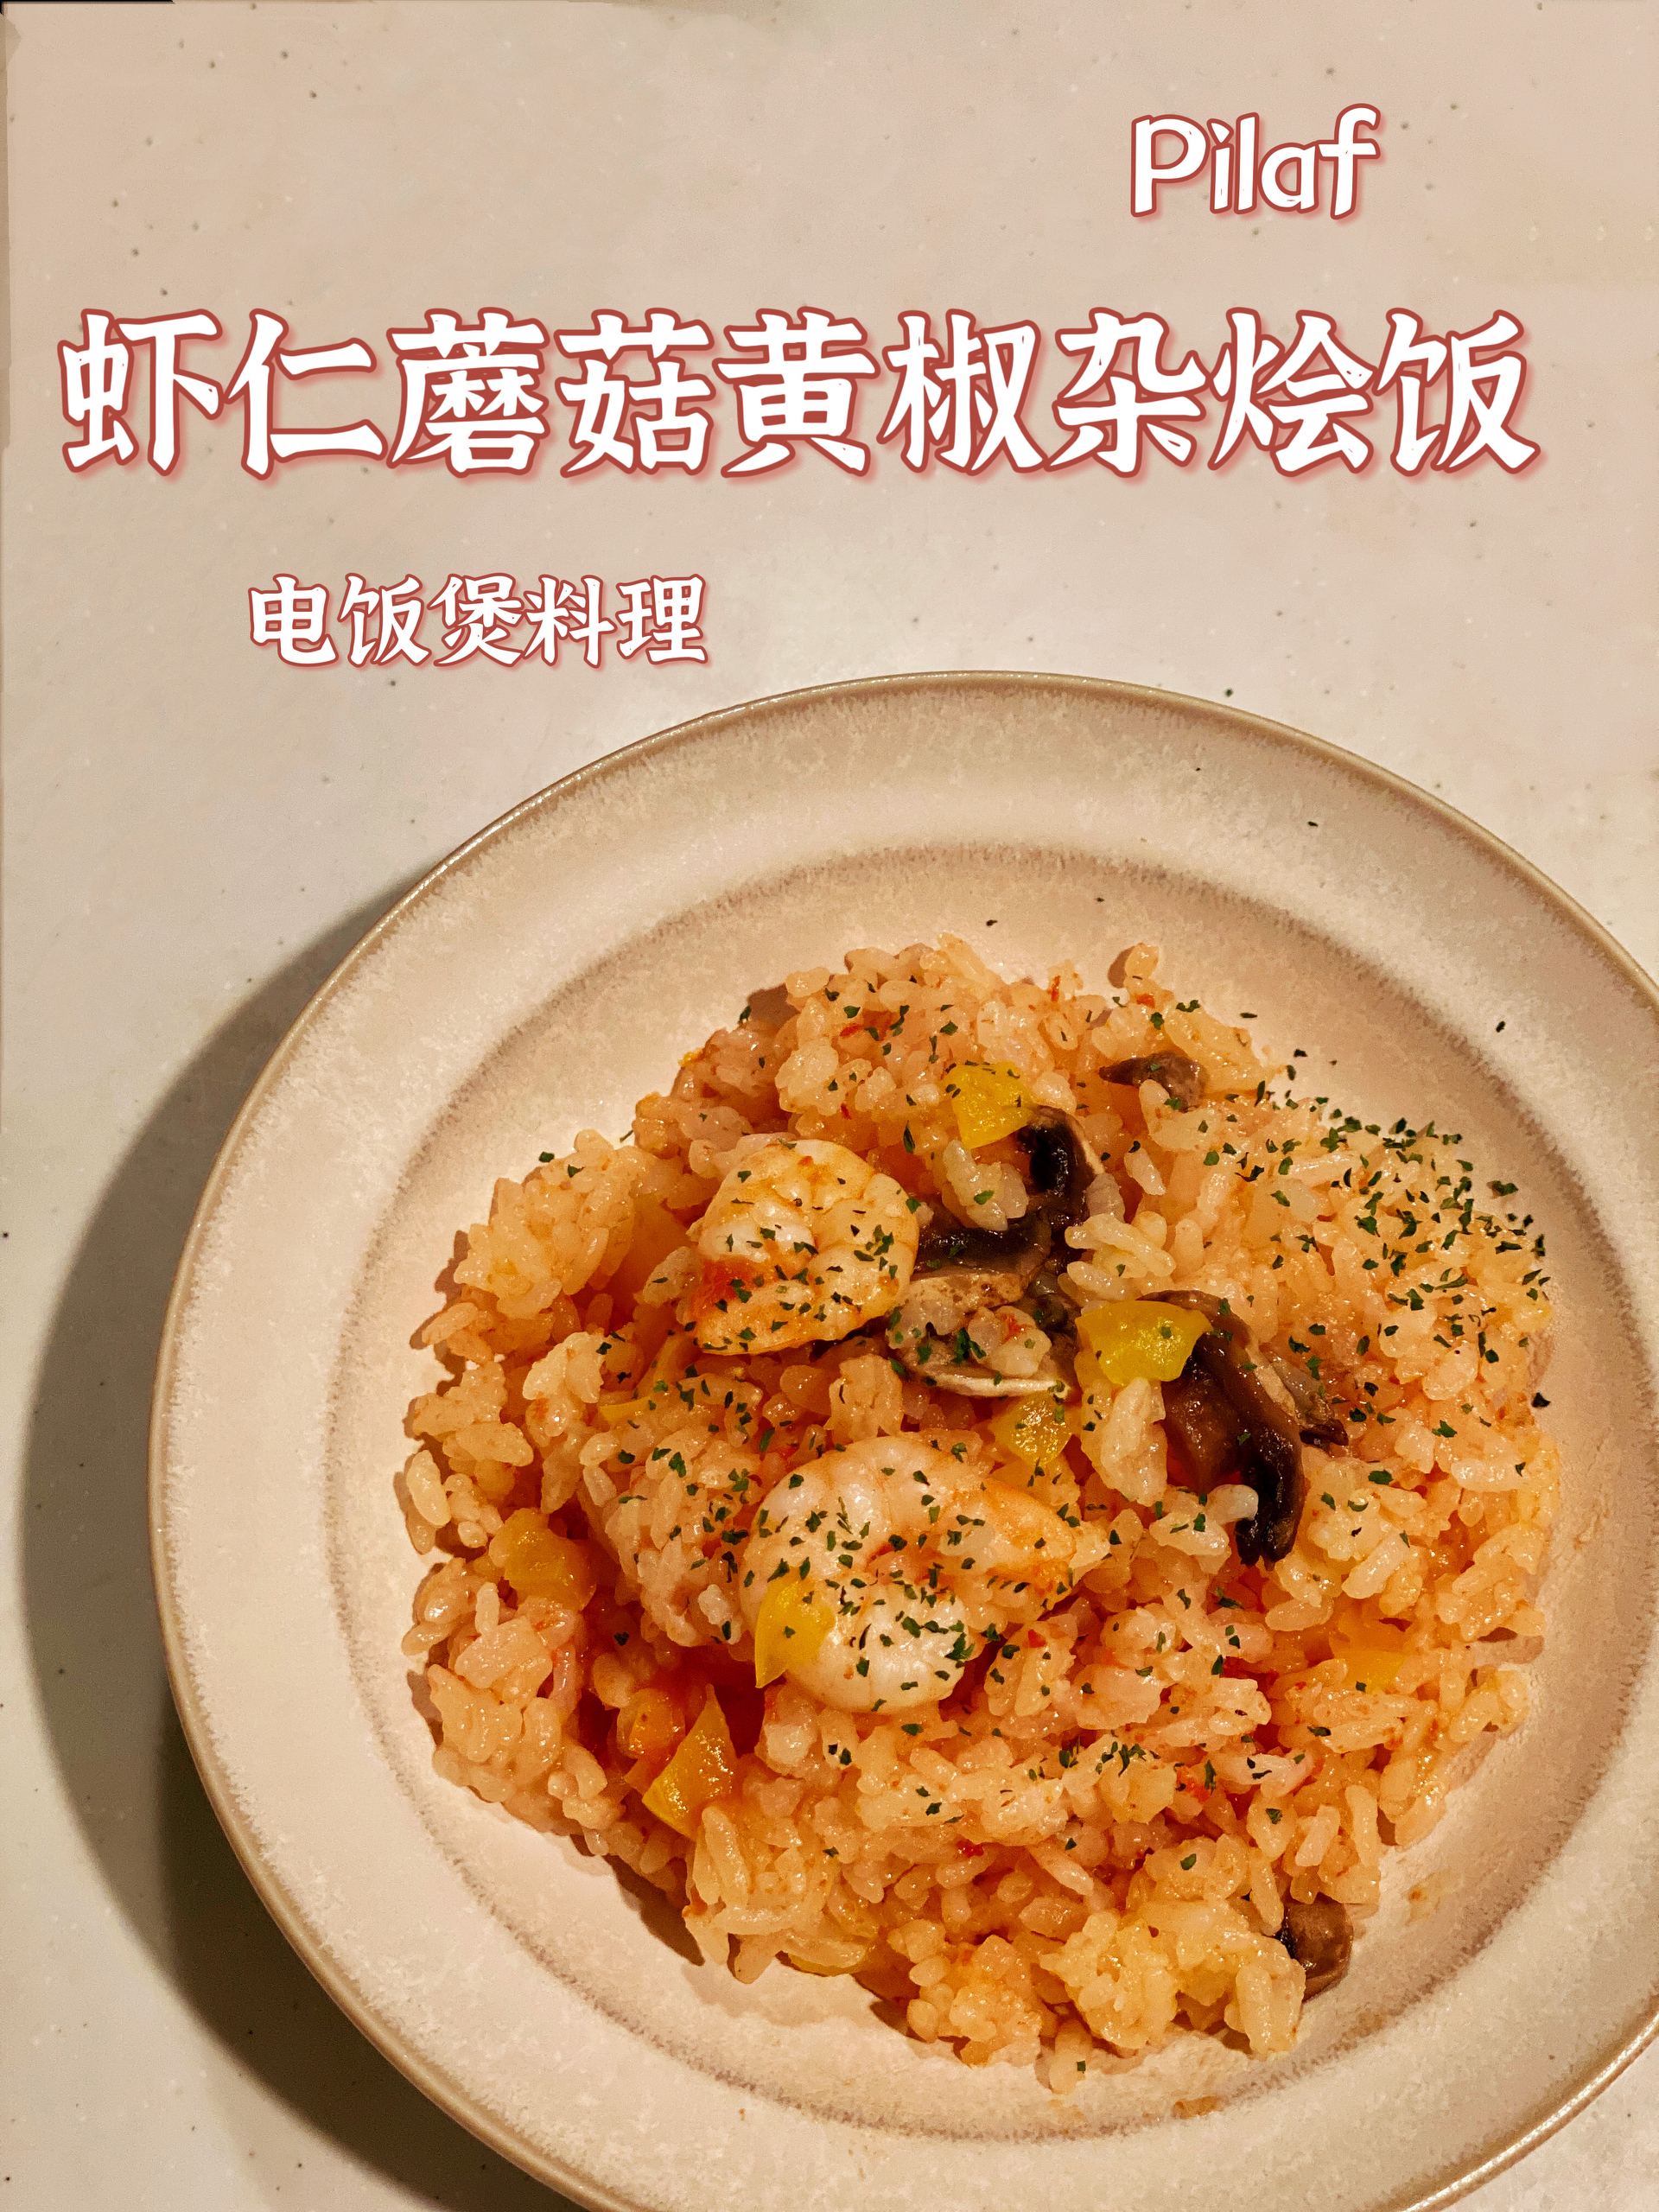 虾仁蘑菇黄椒杂烩饭pilaf